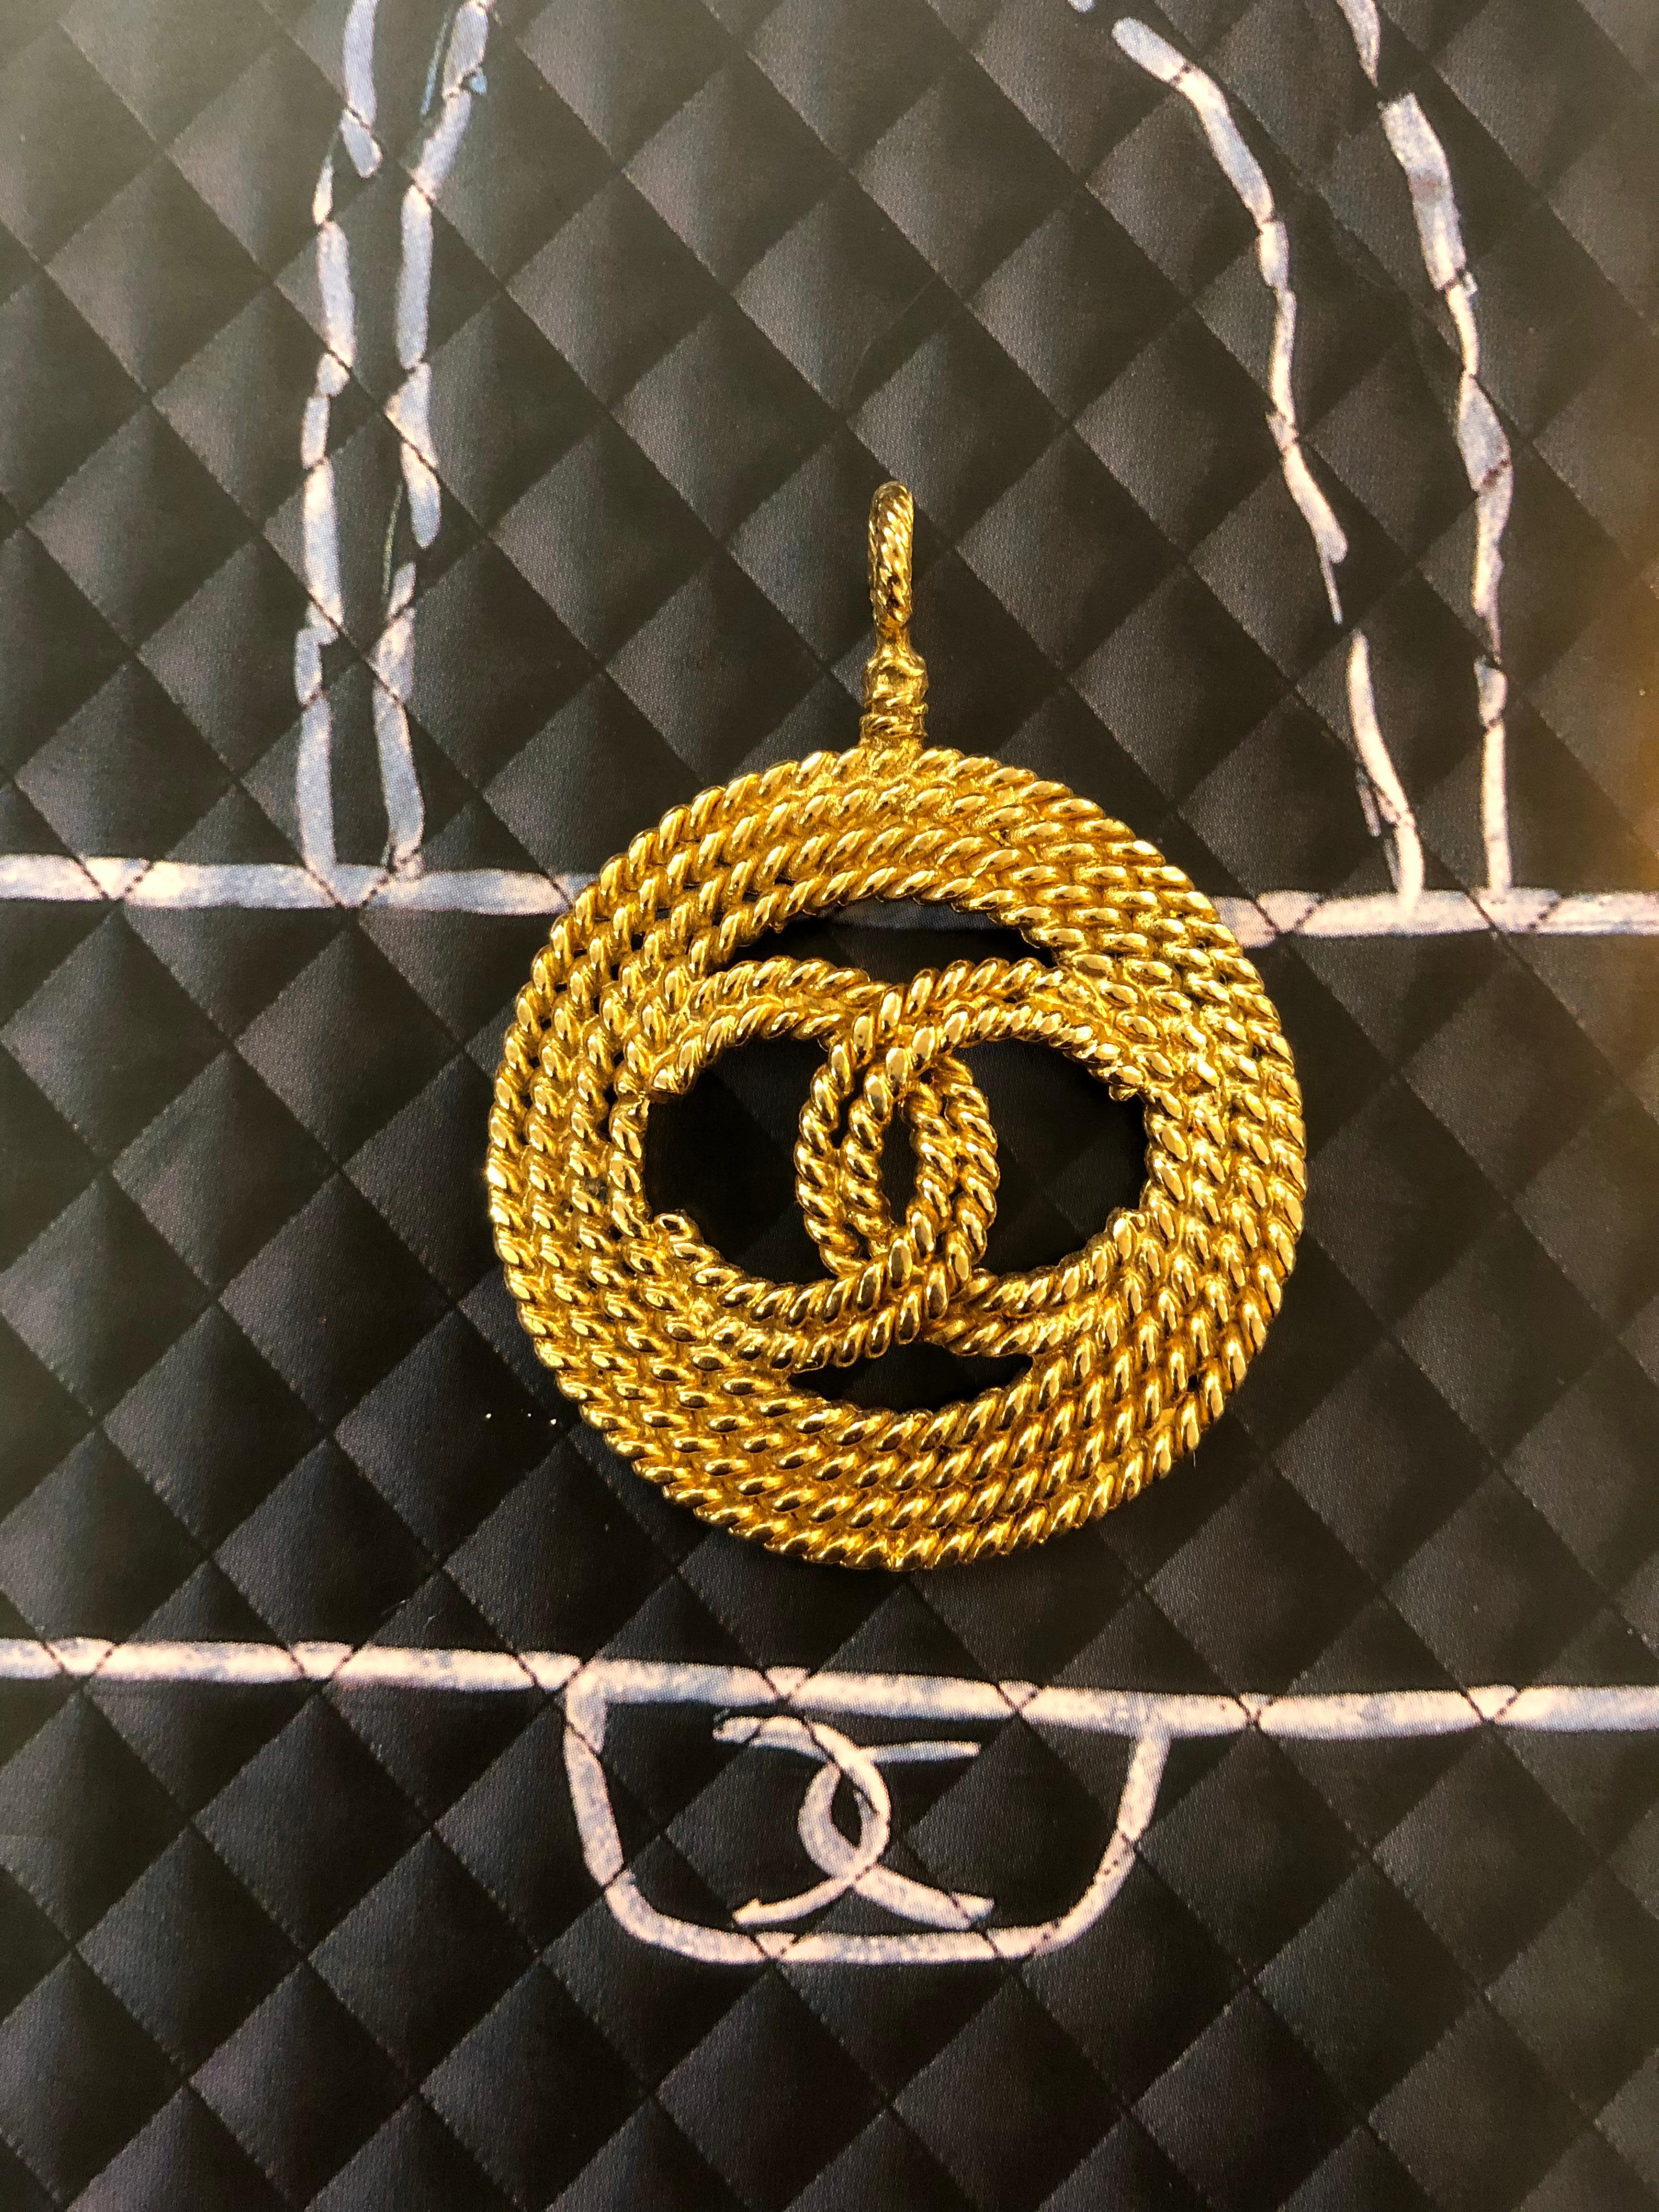 Pendentif Chanel des années 1990 présentant un CC doré entouré d'un triple métal doré en forme de corde. Estampillé Chanel 28 fabriqué en France. Dimensions : 4,9 x 6,4 cm. Cette breloque peut être fixée sur un collier de perles comme indiqué sur la